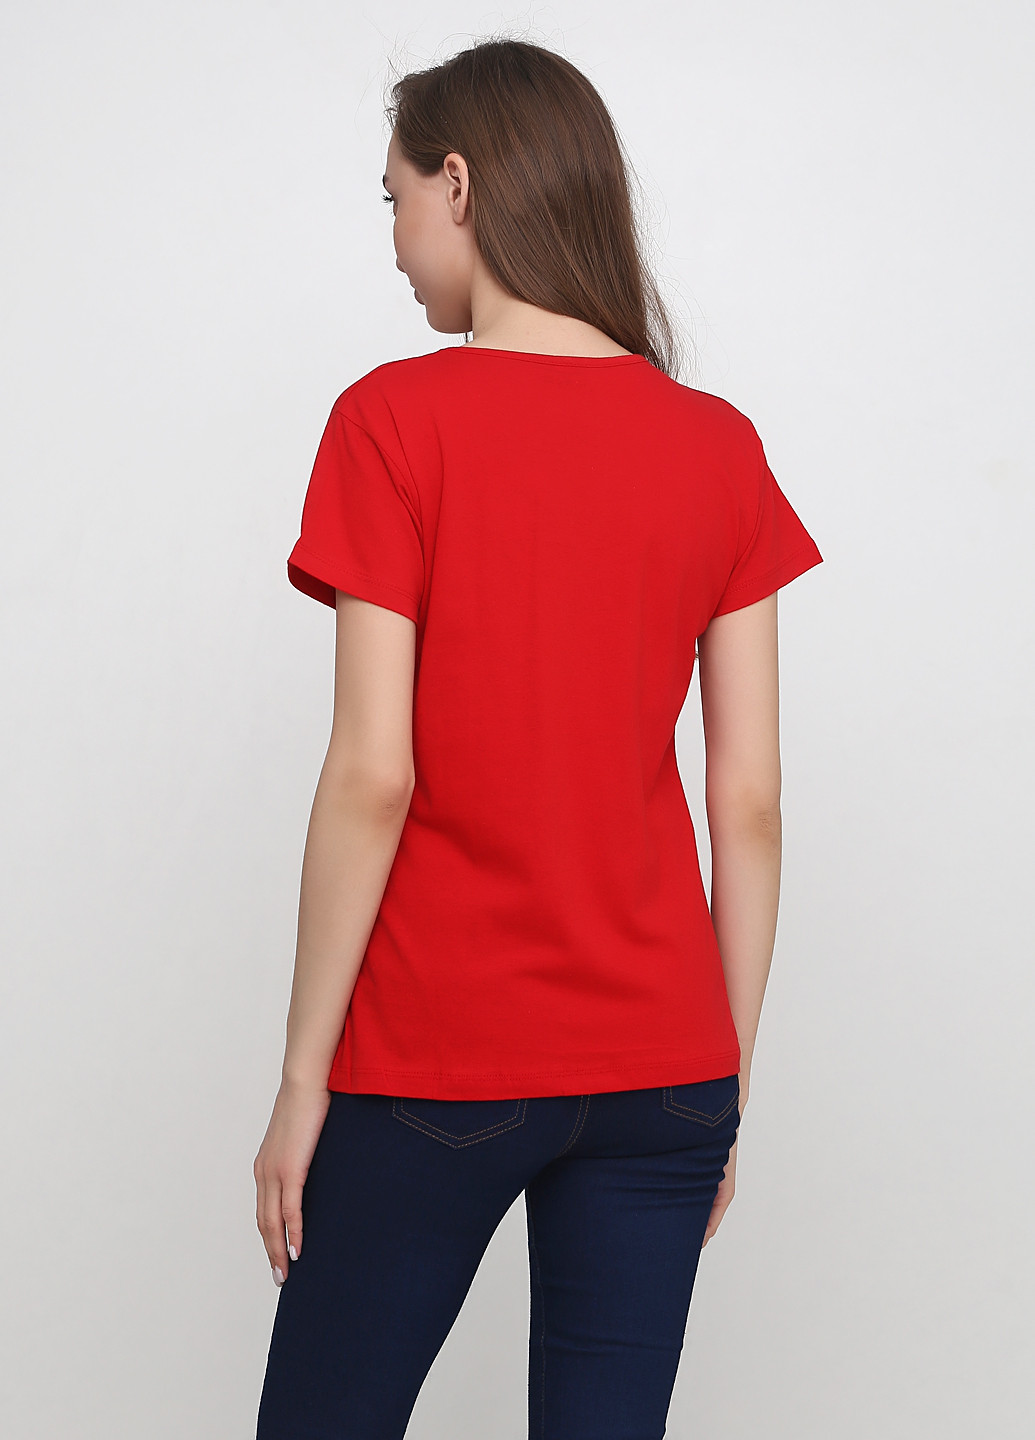 Червона літня футболка Tenkie